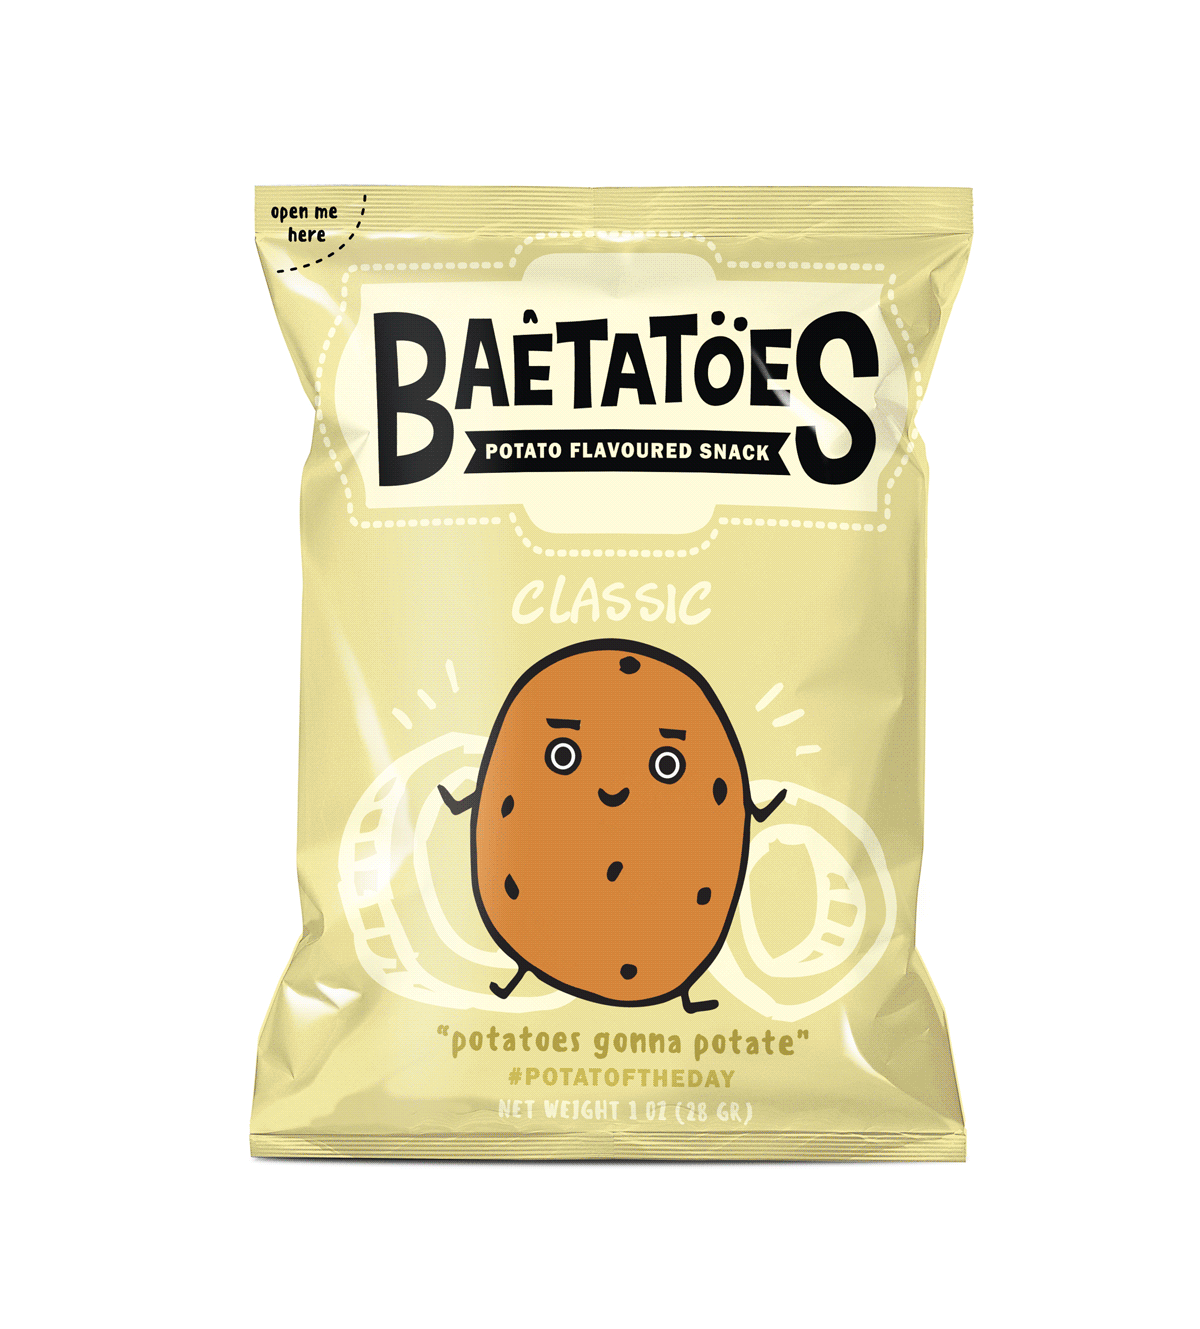 Baetatoes薯片包装10.gif